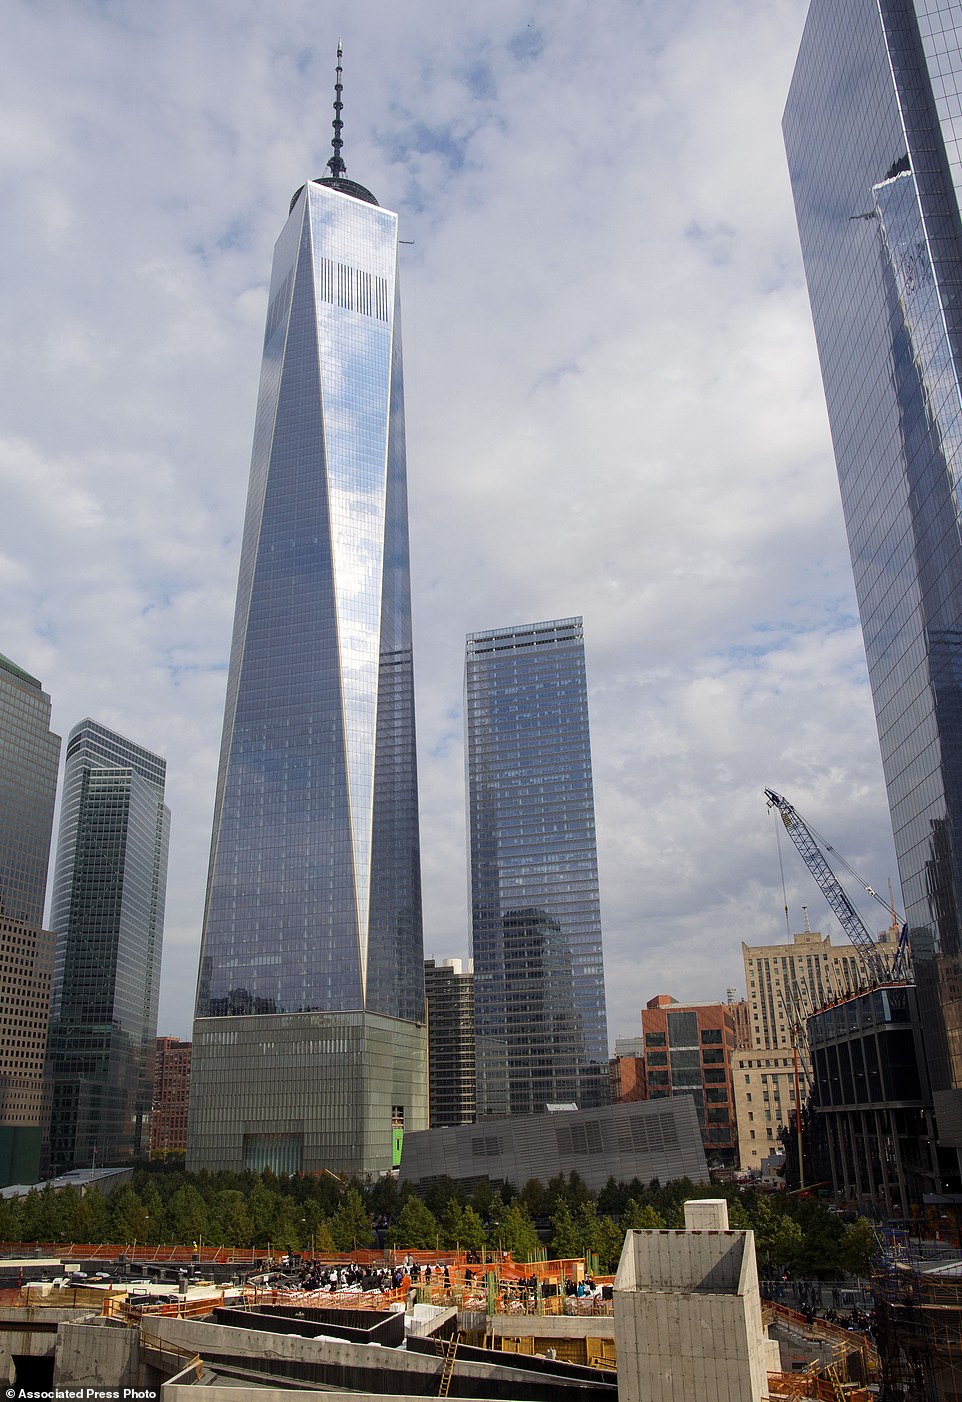 还记得发生在2001年的911恐怖攻击事件吗？那时候纽约世贸中心 (World Trade Center) 被恐怖分子狭持的飞机撞毁倒塌，造成了超过2,700人死亡，深埋在瓦砾碎片当中，让全球关注的人无不悲痛万分。